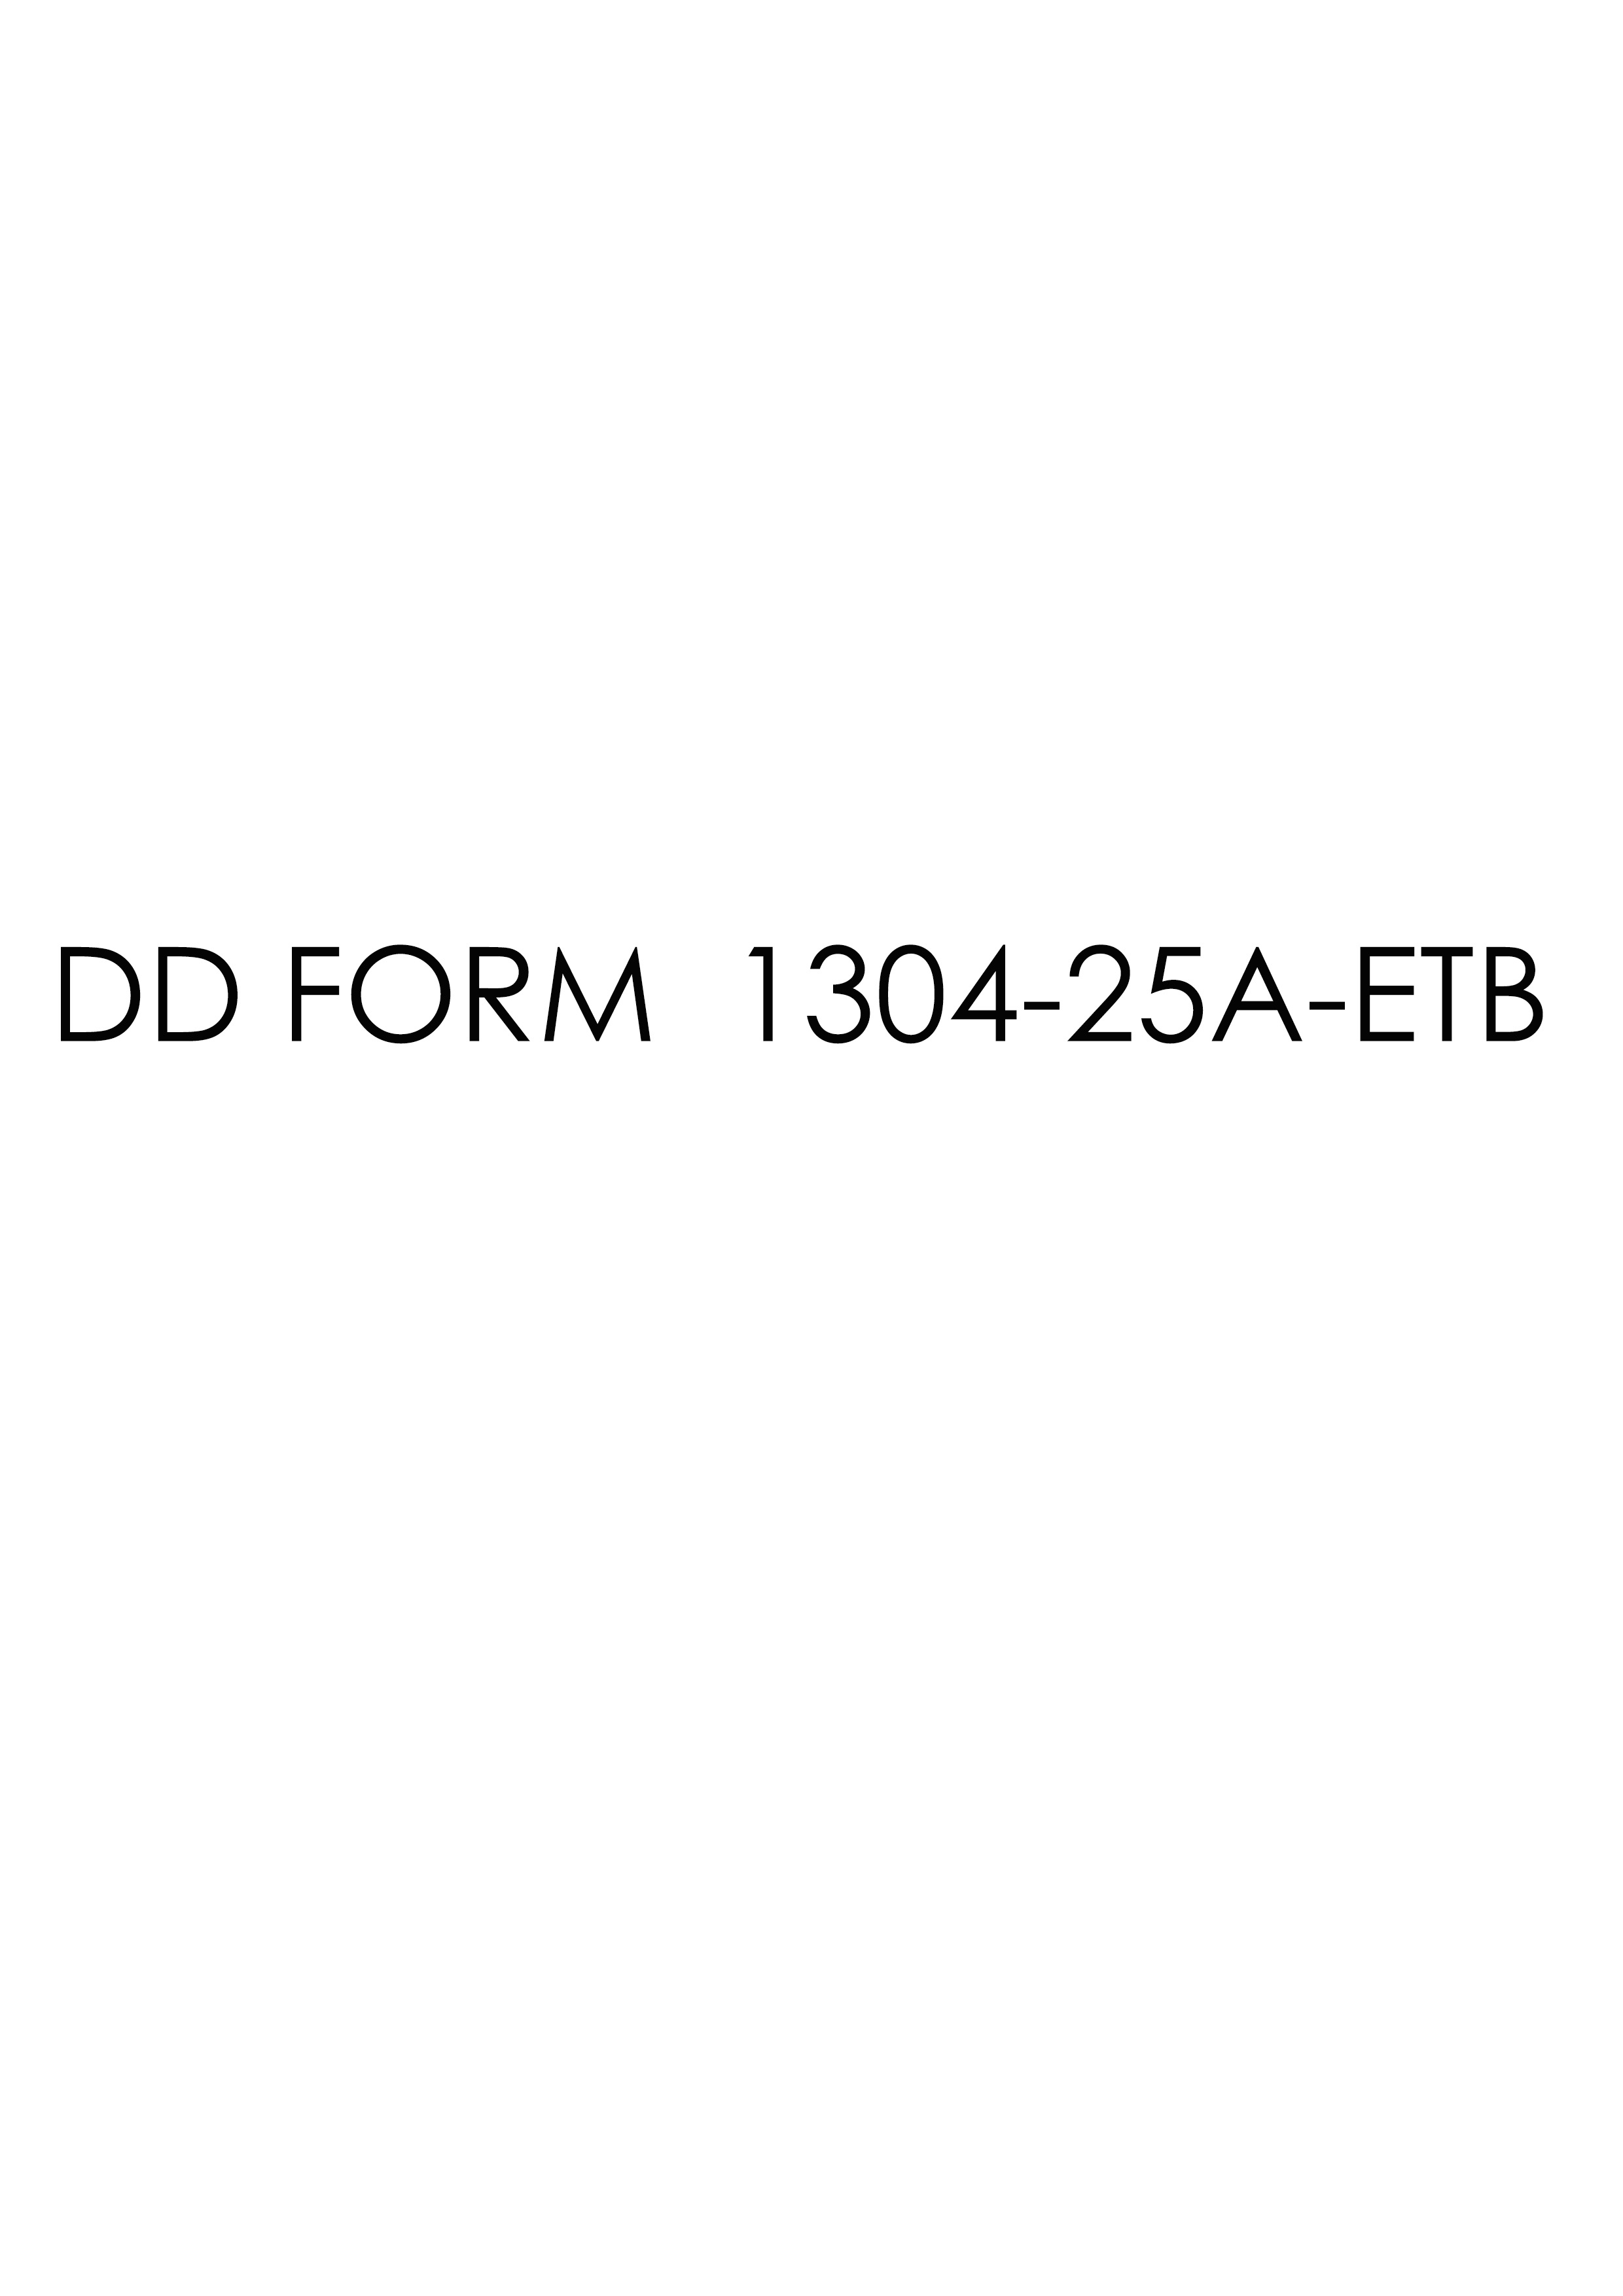 dd Form 1304-25A-ETB fillable